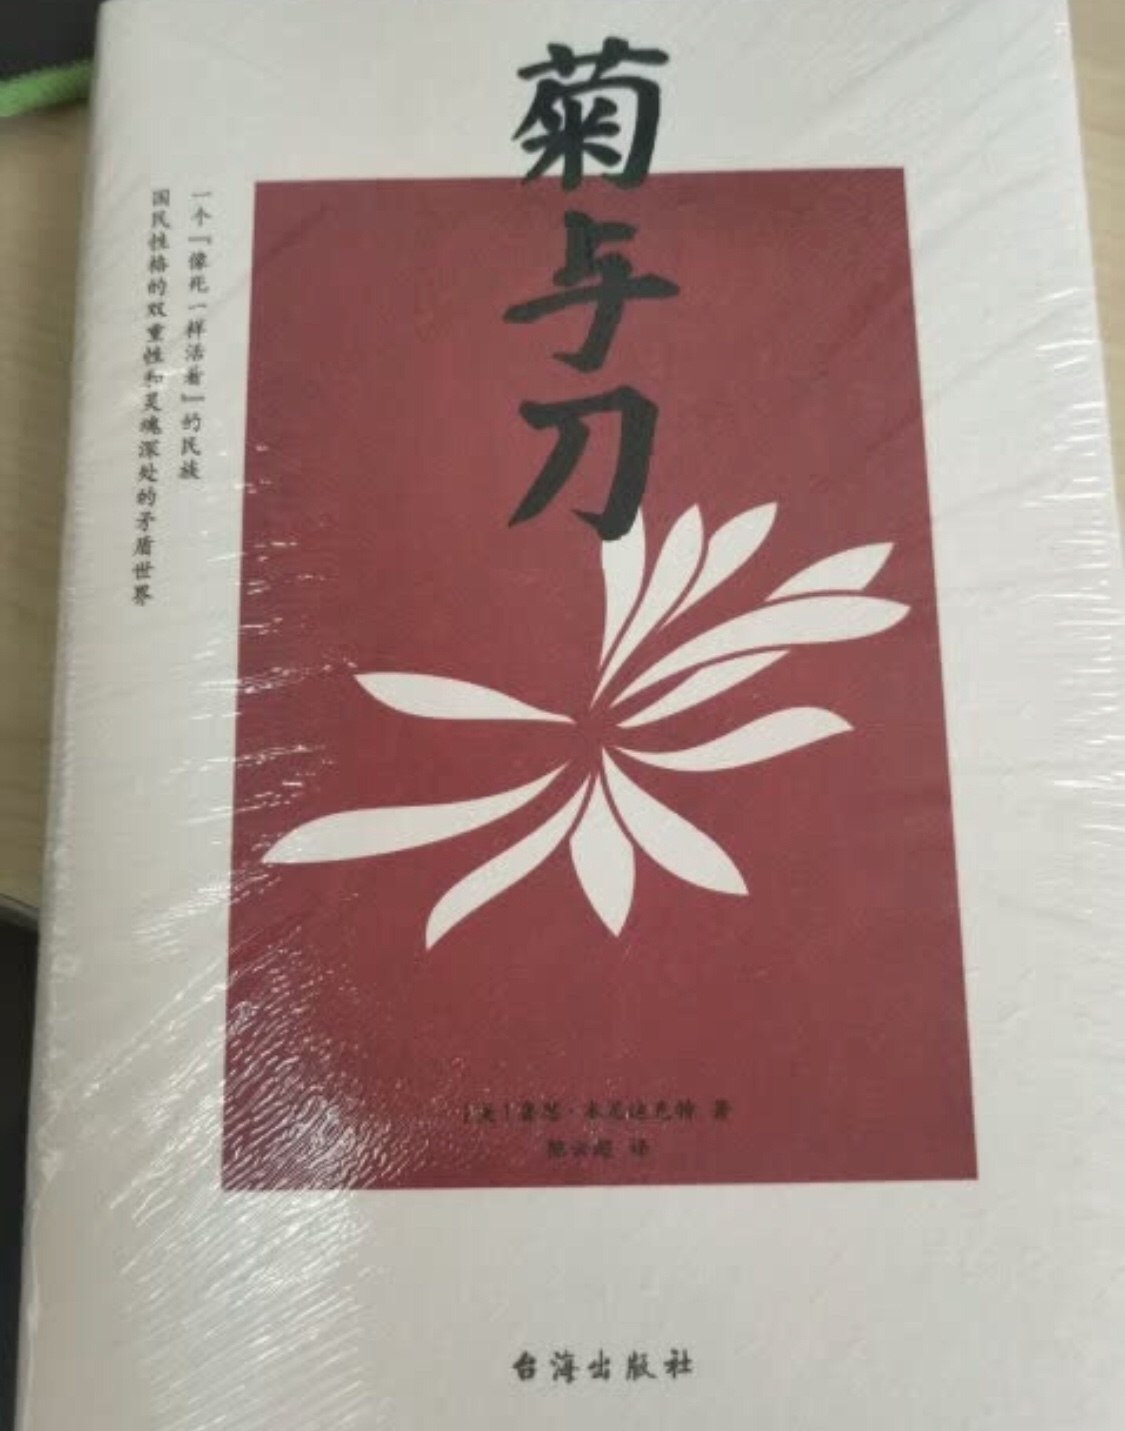 朋友推荐的书，还没来得及看只知道是讲日本的，希望不错。